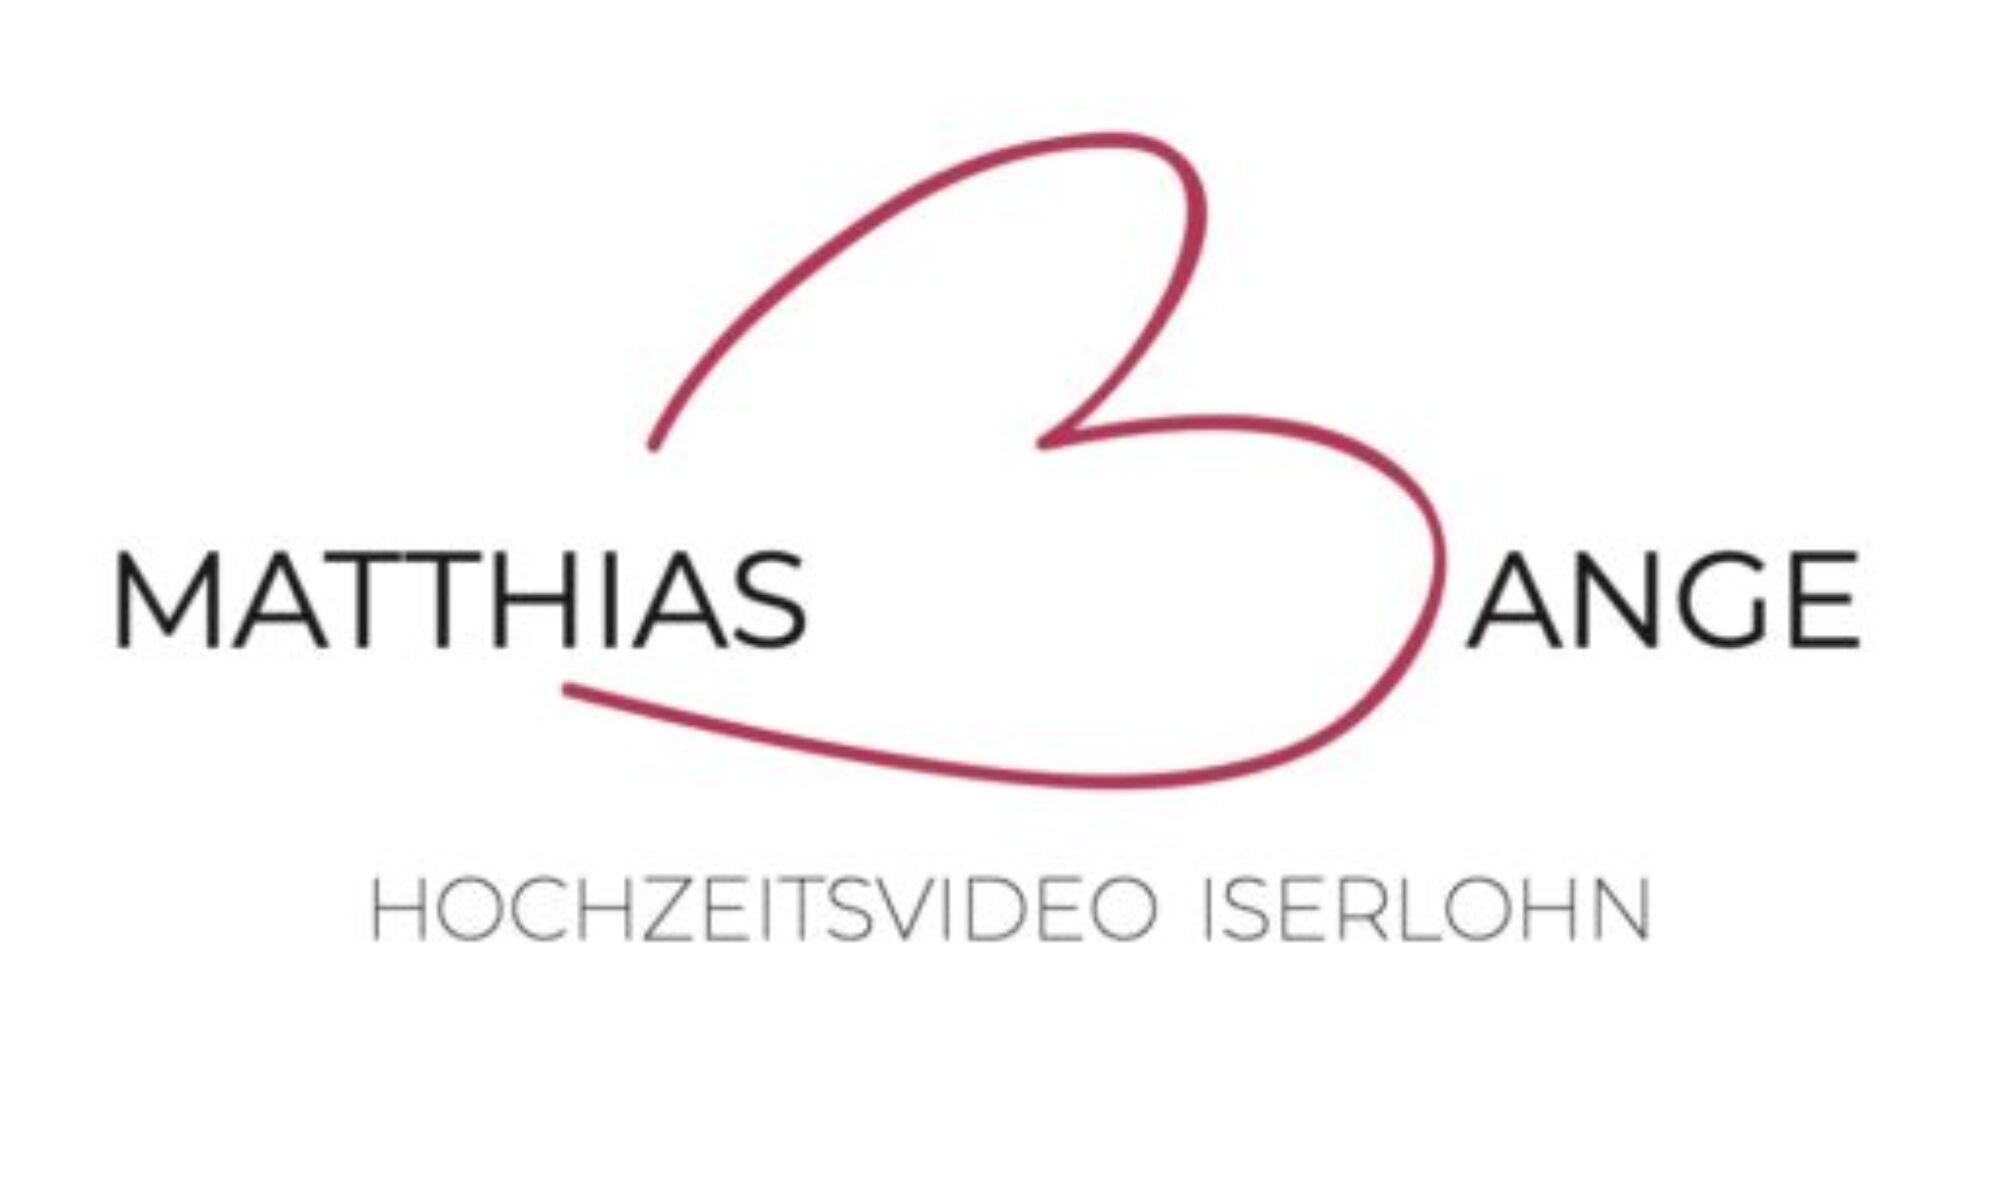 Hochzeitsvideo Iserlohn - Matthias Bange